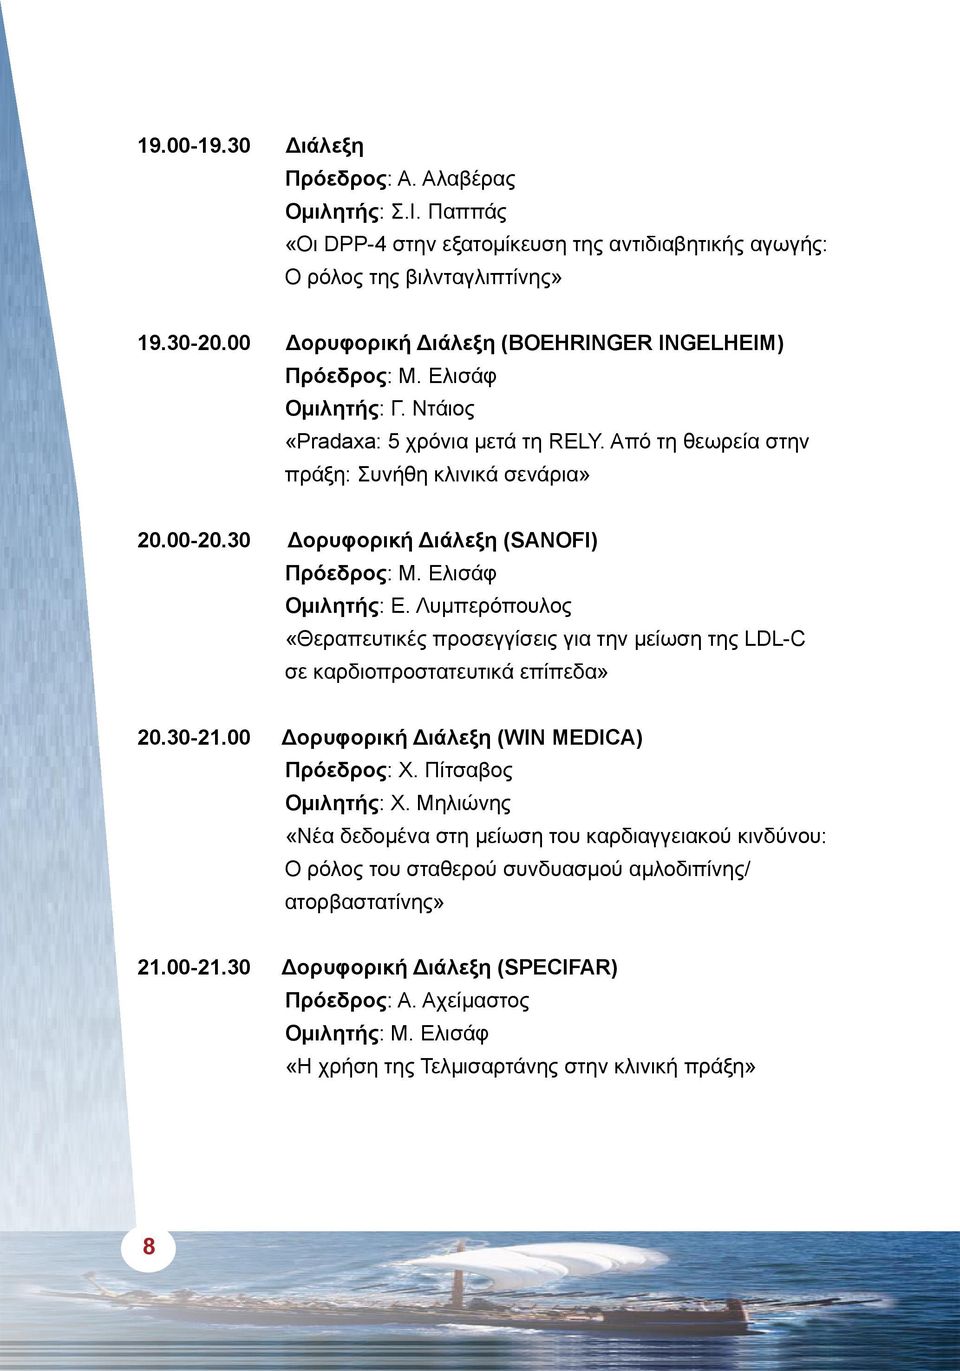 30 Δορυφορική Διάλεξη (SANOFI) Πρόεδρος: Μ. Ελισάφ Ομιλητής: Ε. Λυμπερόπουλος «Θεραπευτικές προσεγγίσεις για την μείωση της LDL-C σε καρδιοπροστατευτικά επίπεδα» 20.30-21.